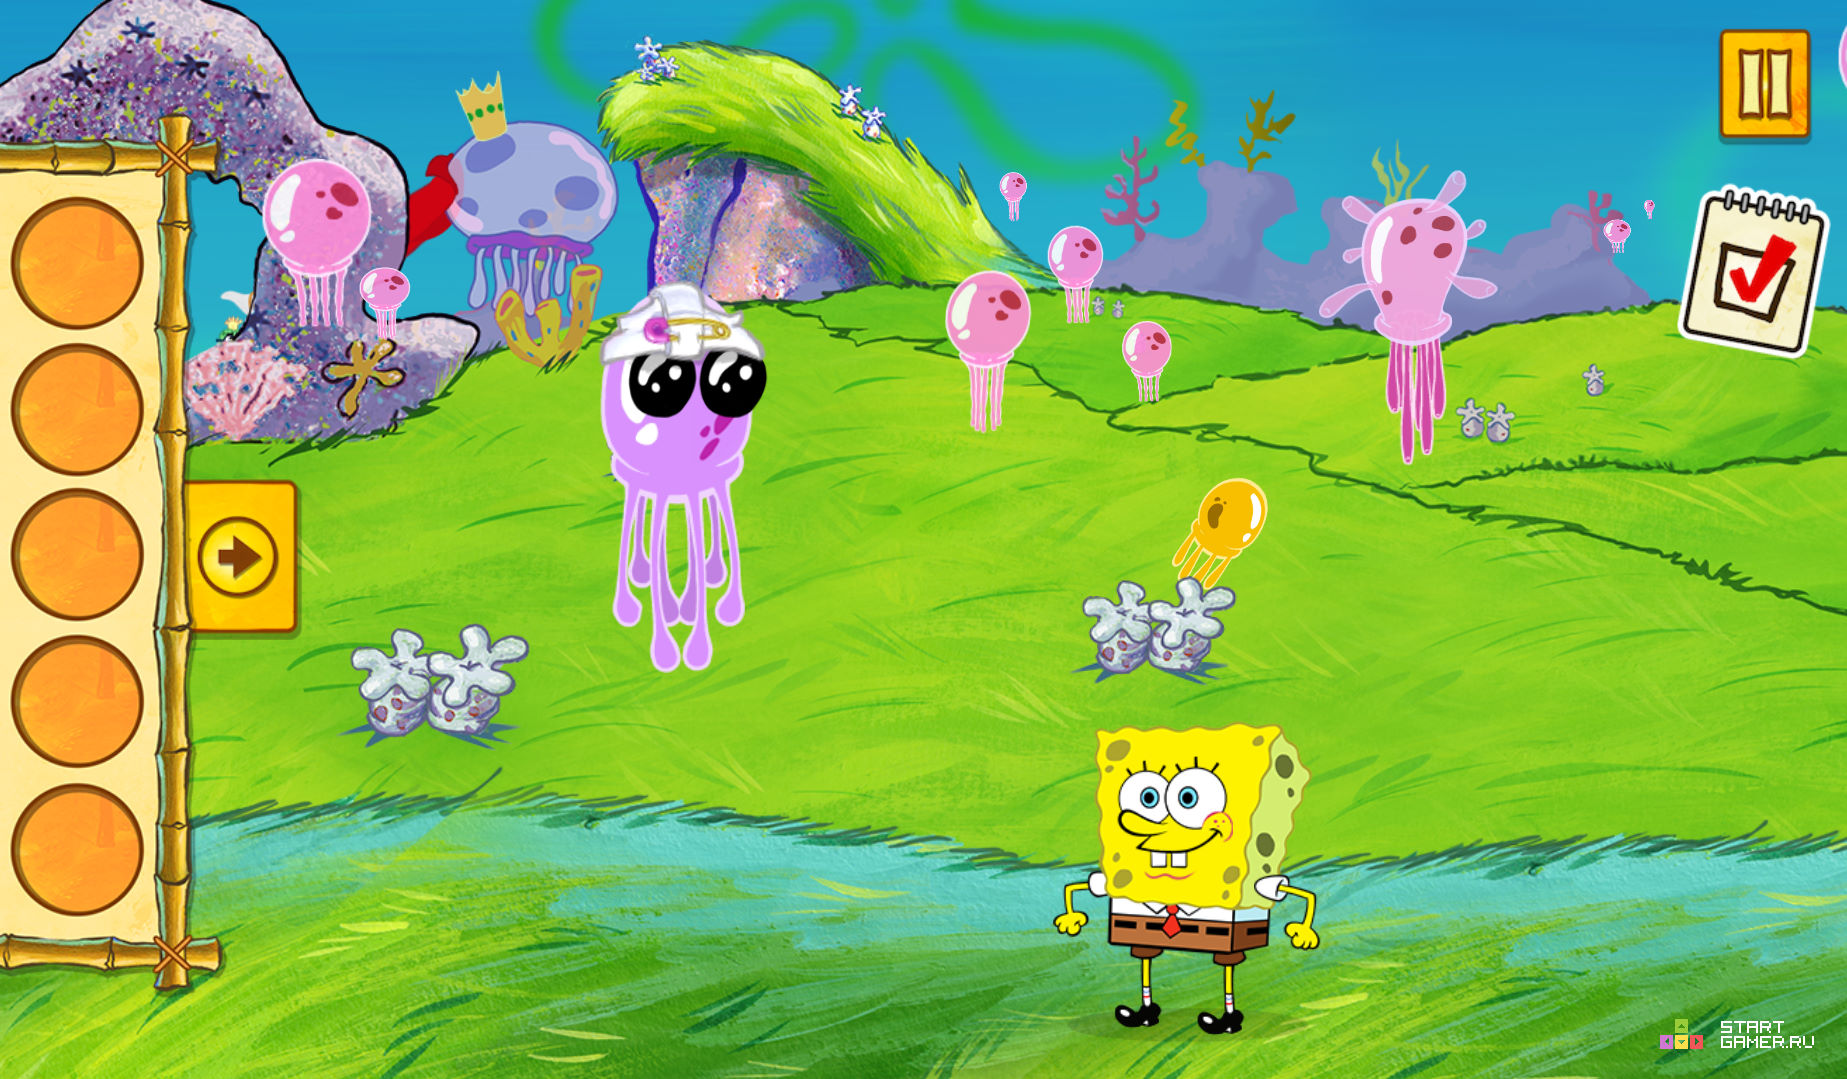 (Spongebob Saves The Day) - играть онлайн бесплатно (изображение № 12) .